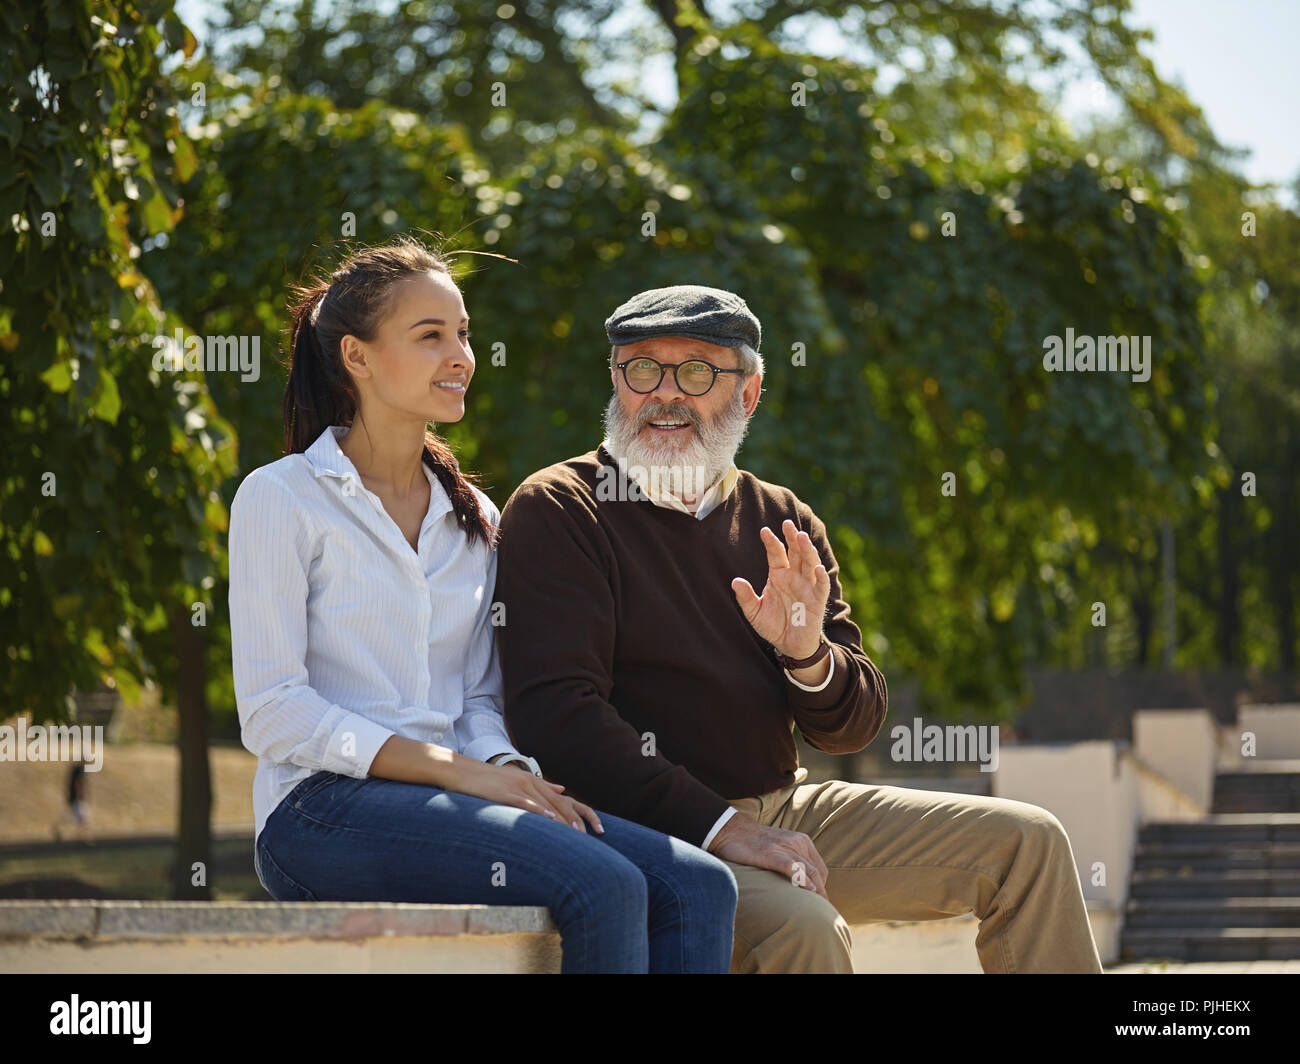 Aider quelqu'un que vous aimez. Portrait of young smiling girl embracing grand-père contre city park. communauté et de vie de la famille concept Banque D'Images